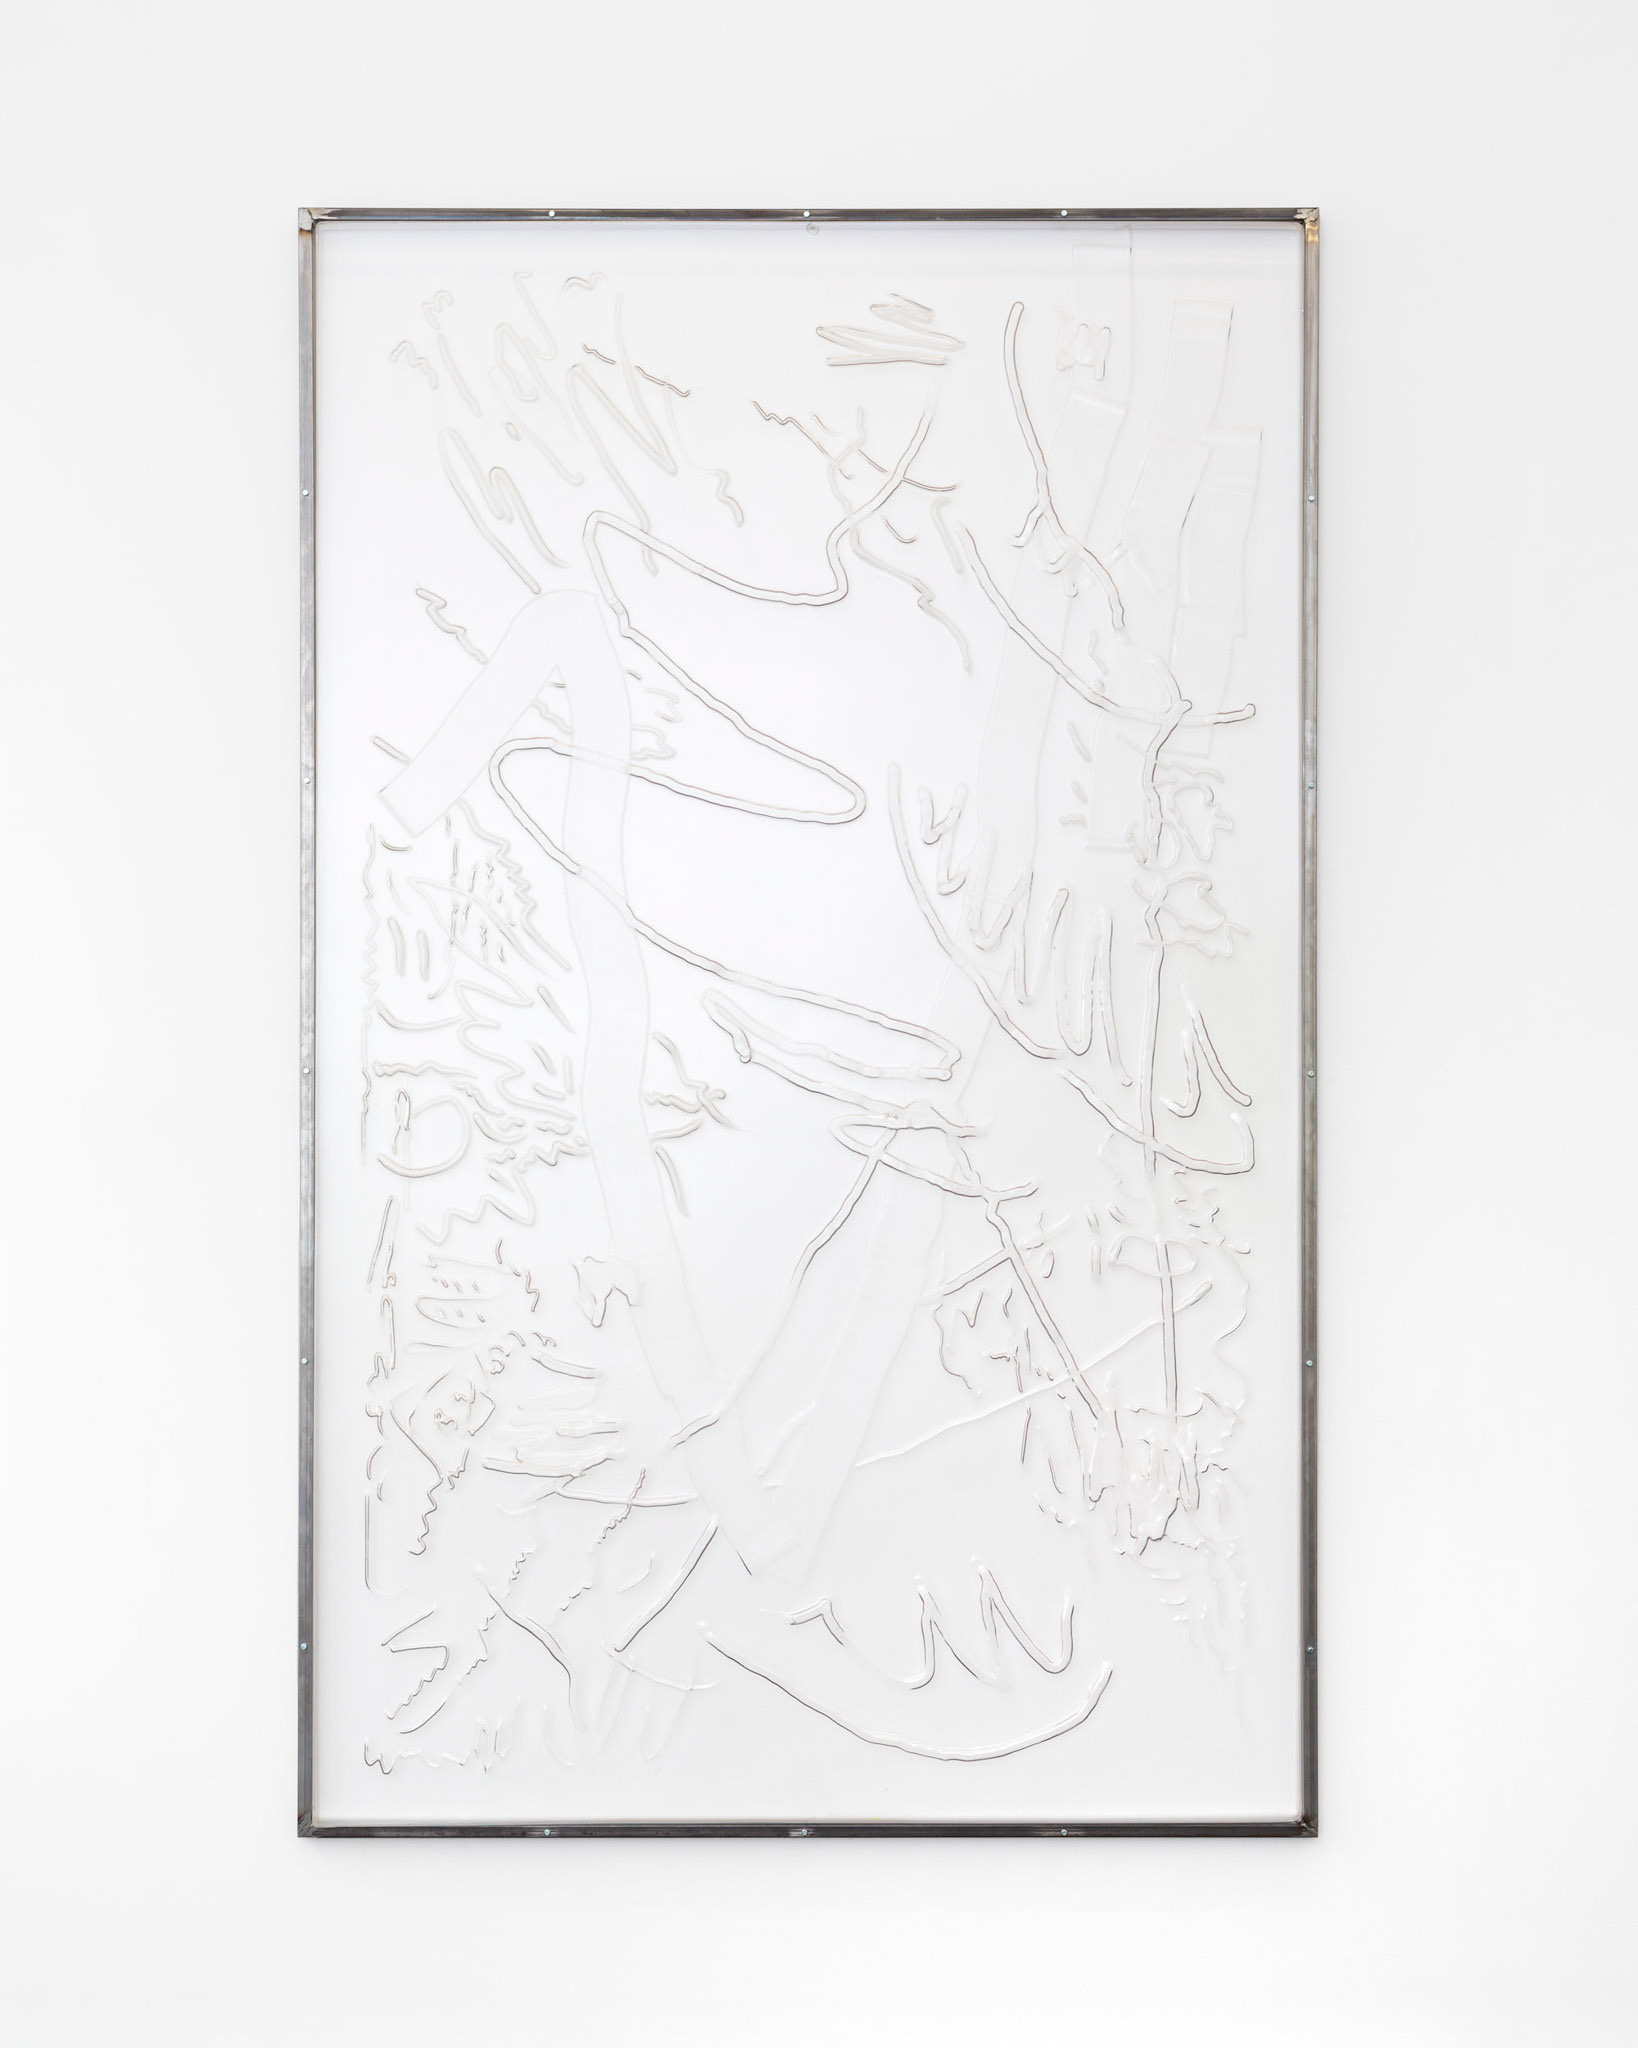 Hannah Sophie Dunkelberg, Pale Pleasures 1, 2019, polystyrene, steel, 230 x 145 cm. Courtesy the artist and Gunia Nowik Gallery